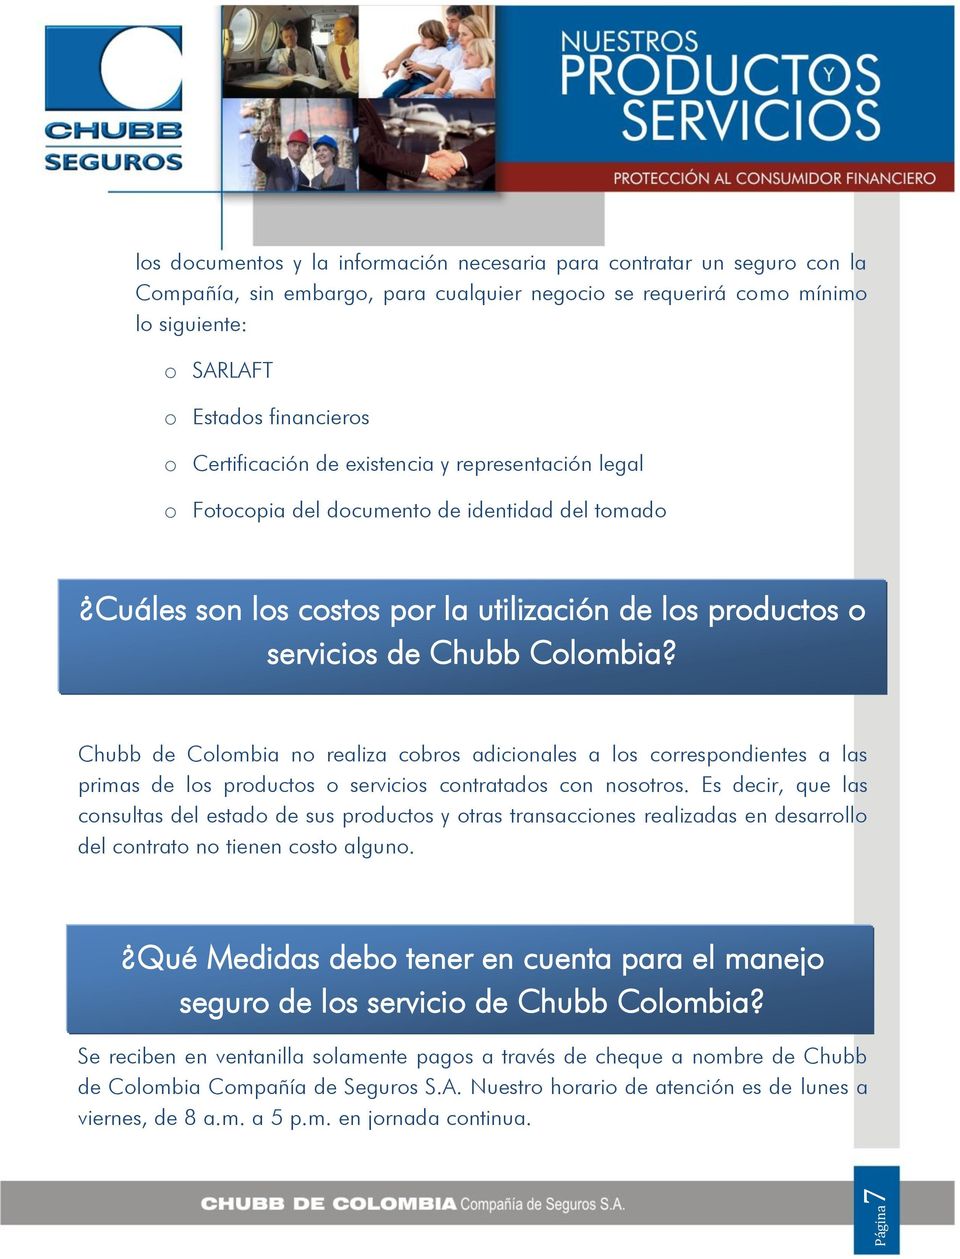 Chubb de Colombia no realiza cobros adicionales a los correspondientes a las primas de los productos o servicios contratados con nosotros.